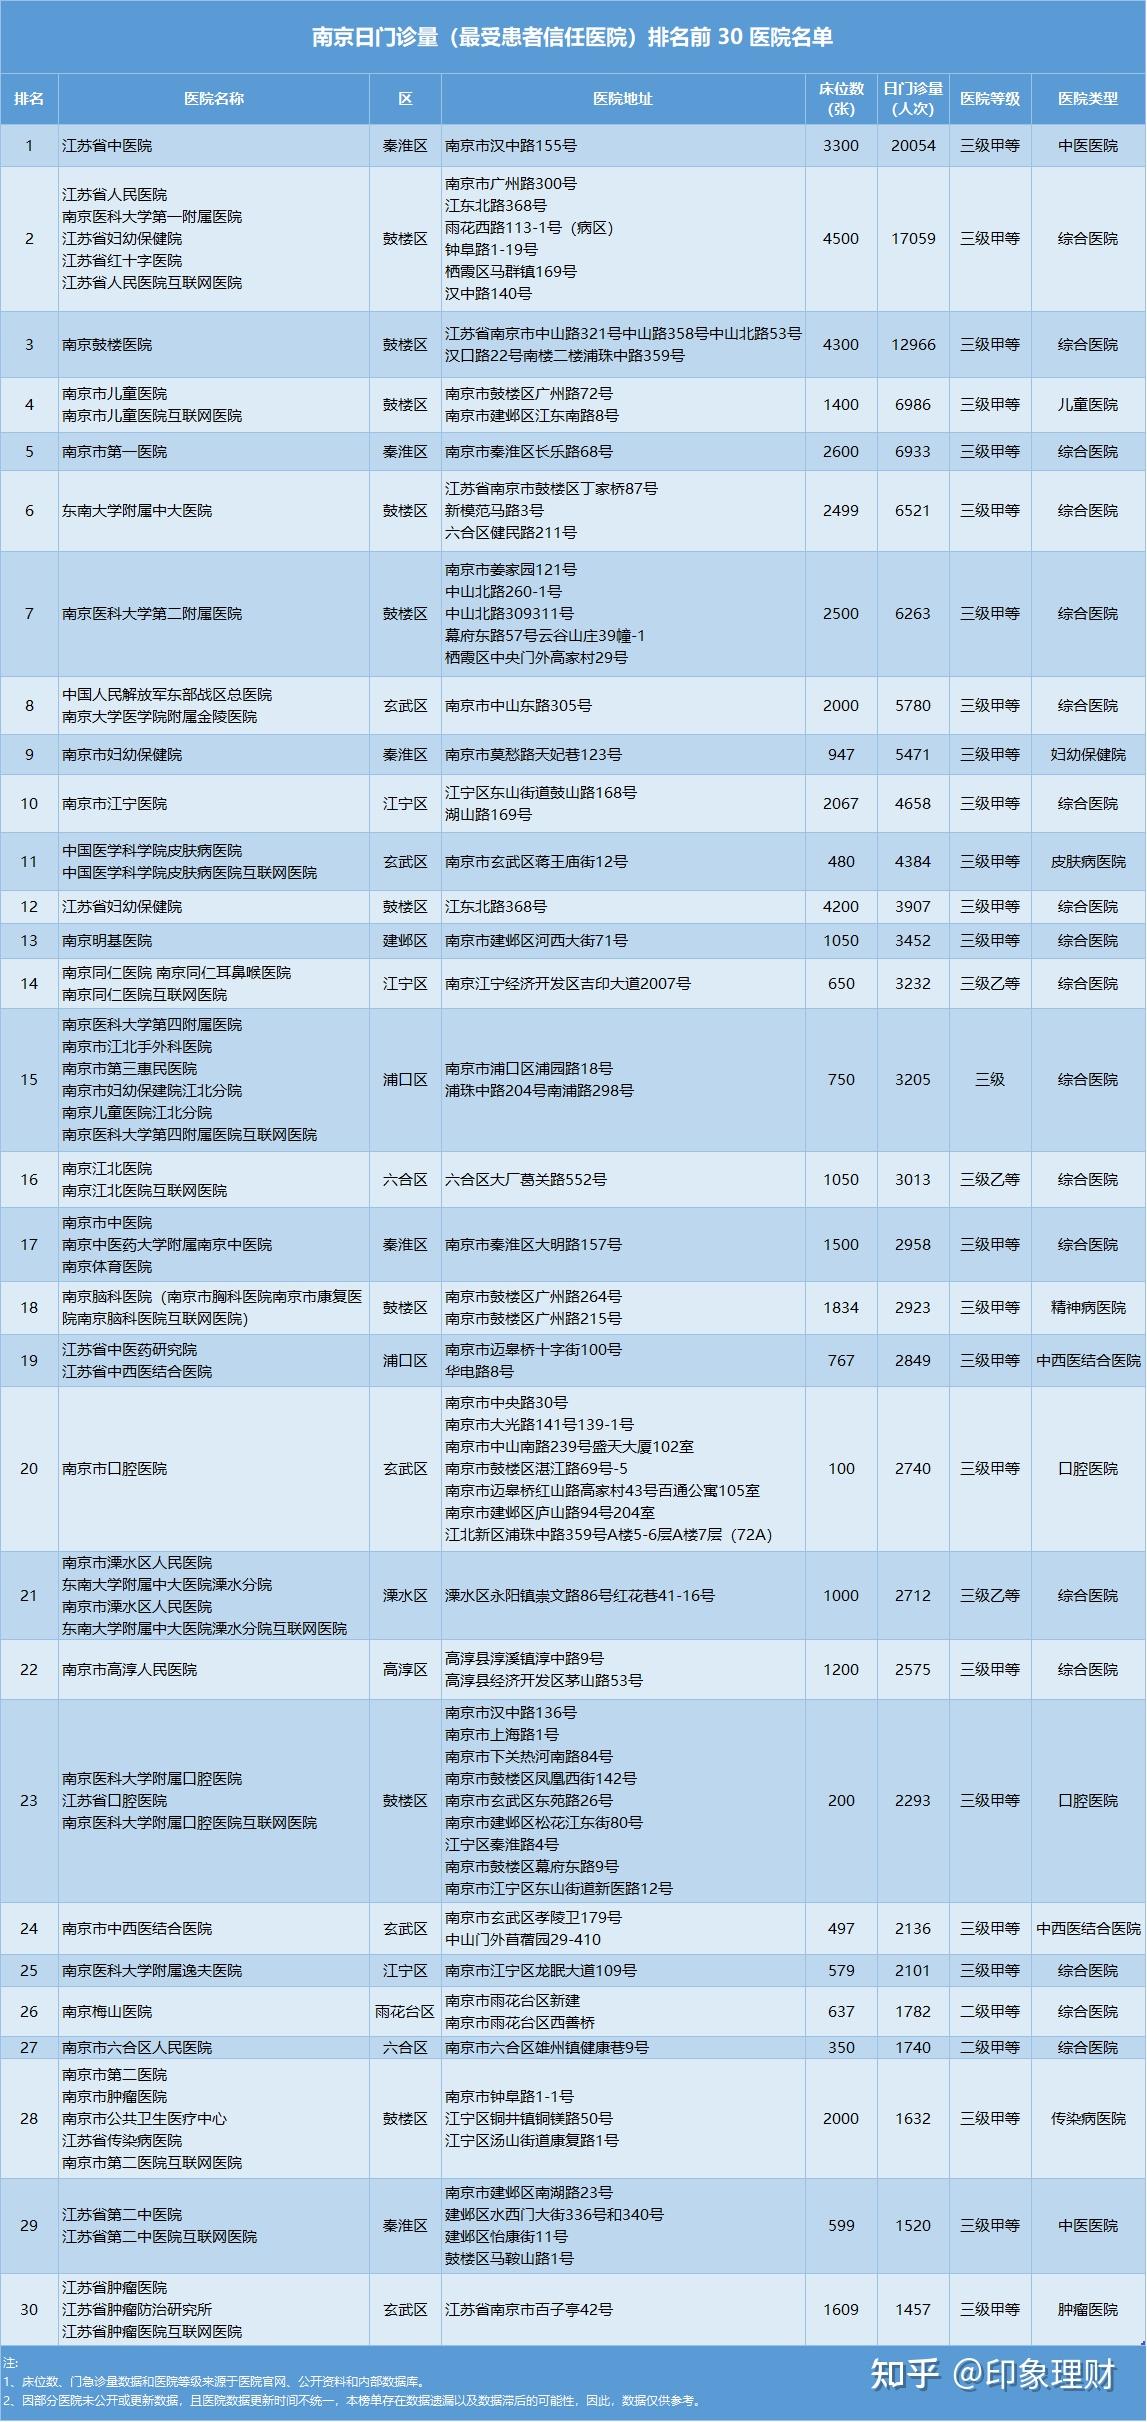 南京市民口碑之选:最受患者信任的医院及门诊量排名top 10 榜单!